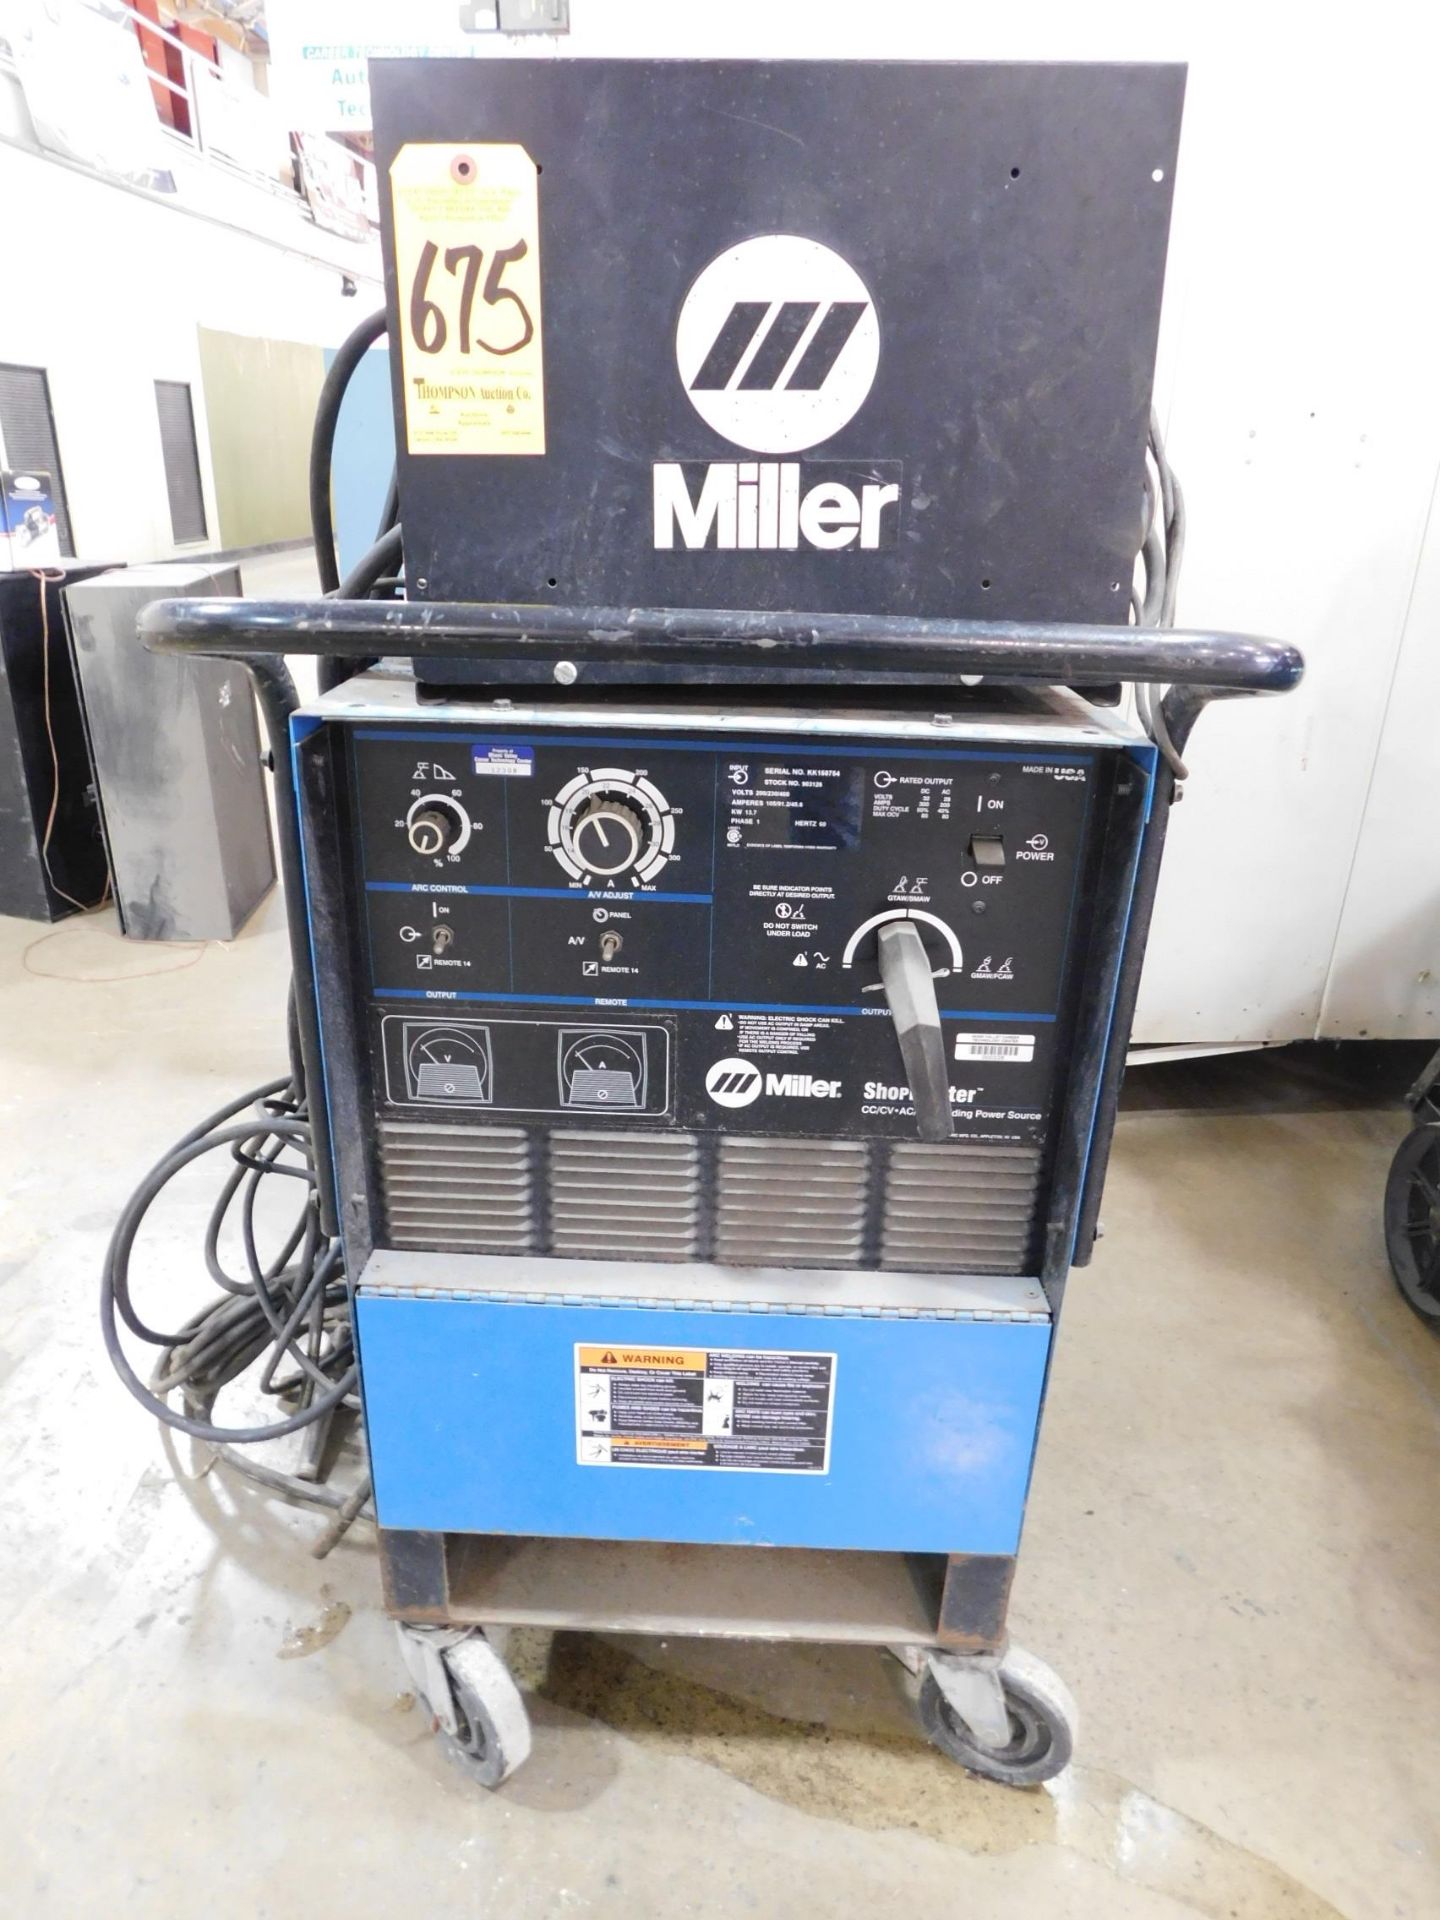 Miller Shopmaster Tig Welder, SN KK158754, 230V, 1 phs., with Miller HF-251D-1 Arc Starter, and